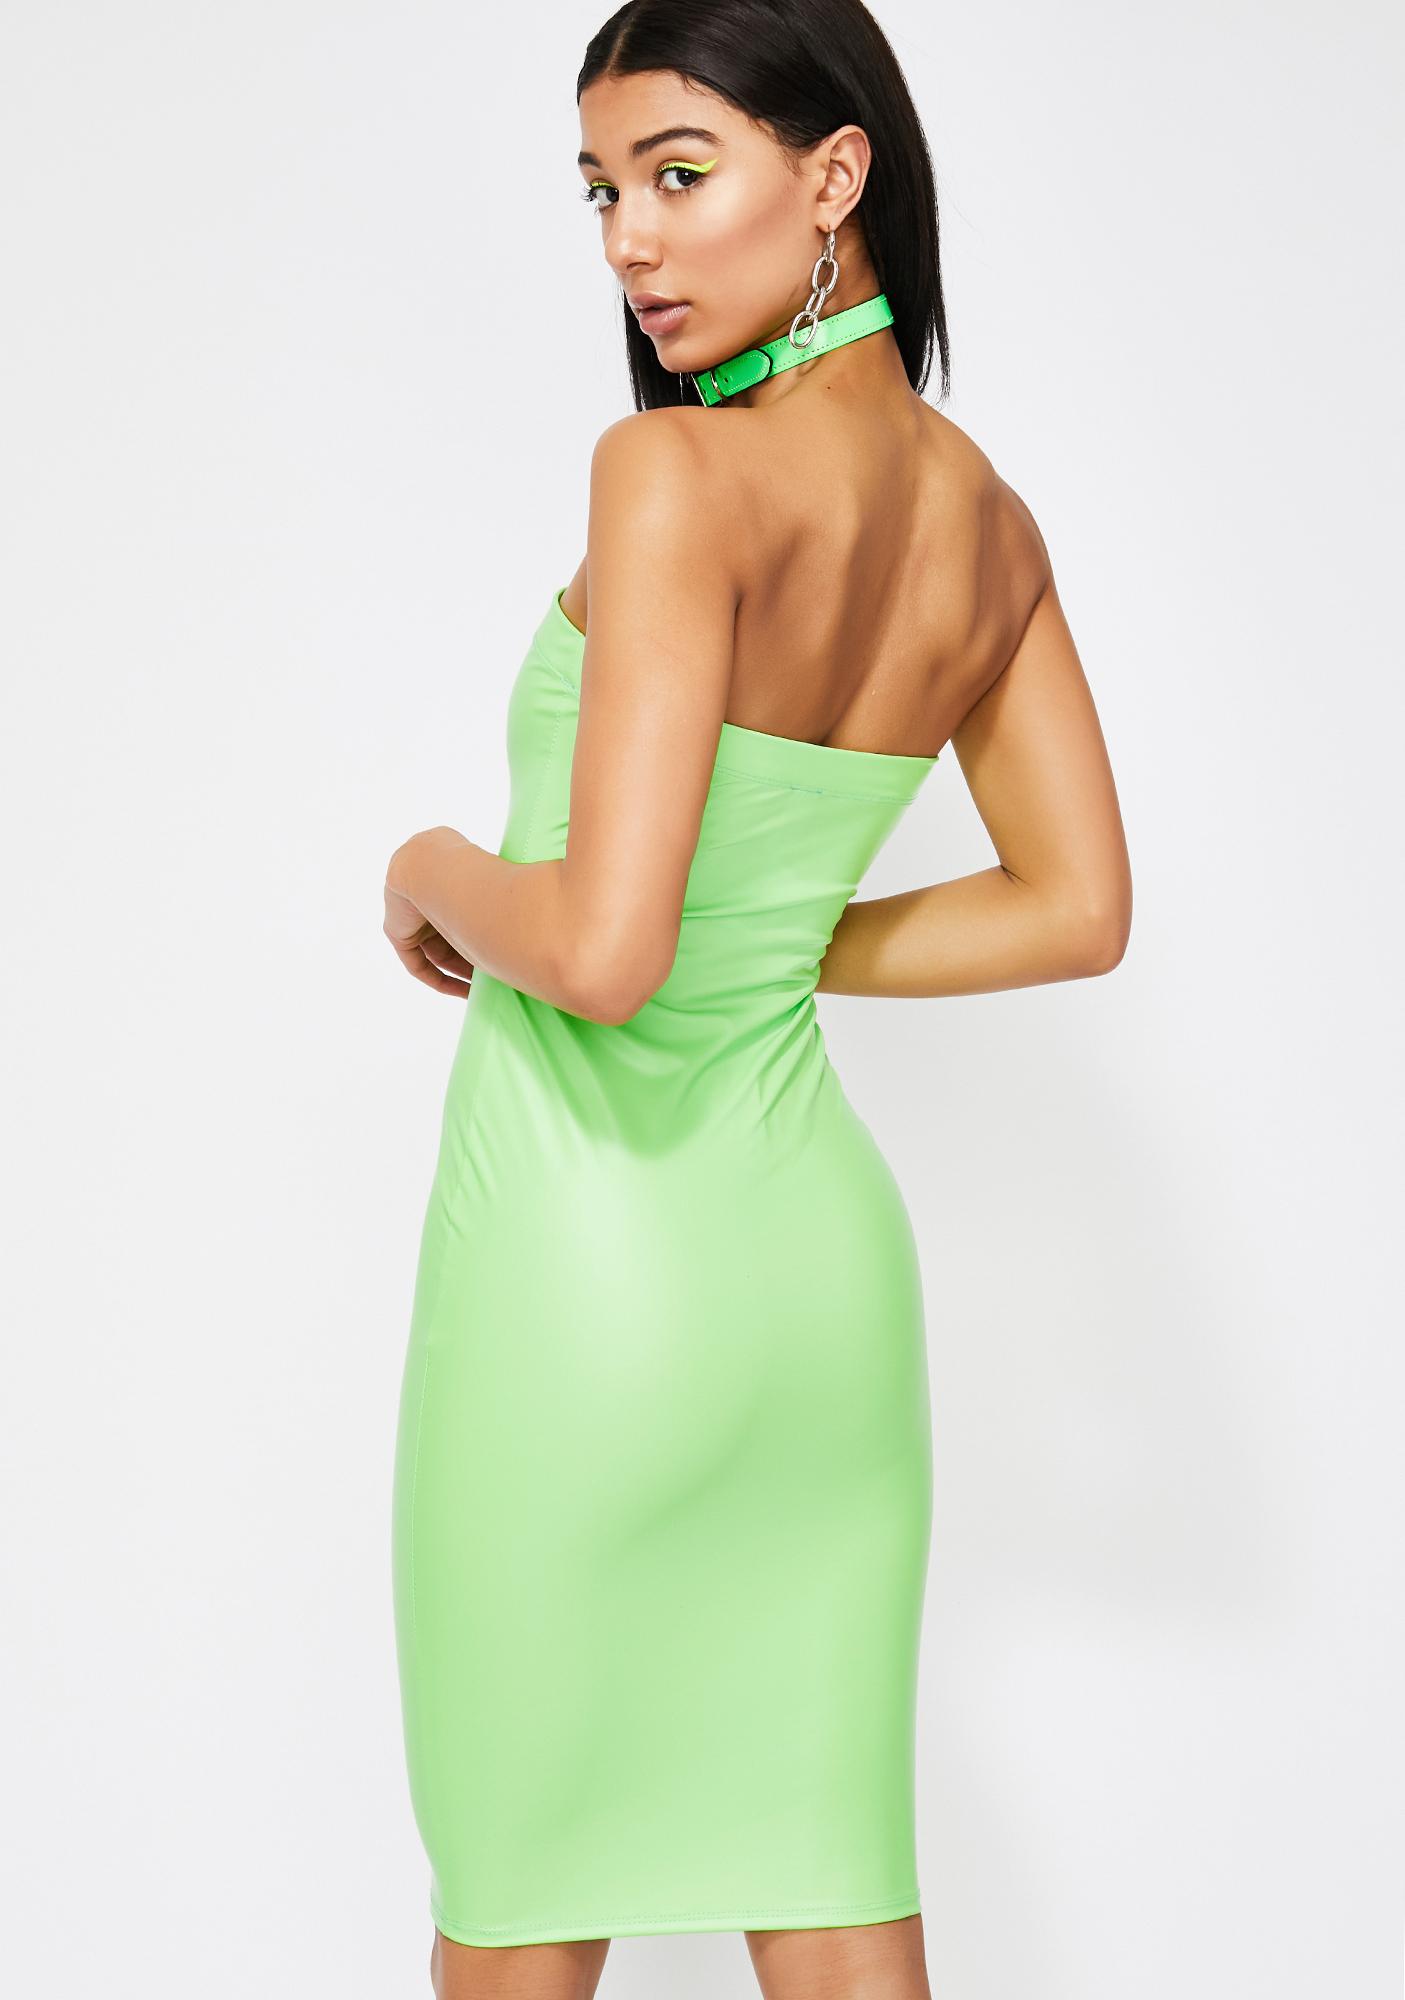 neon green bodycon dress